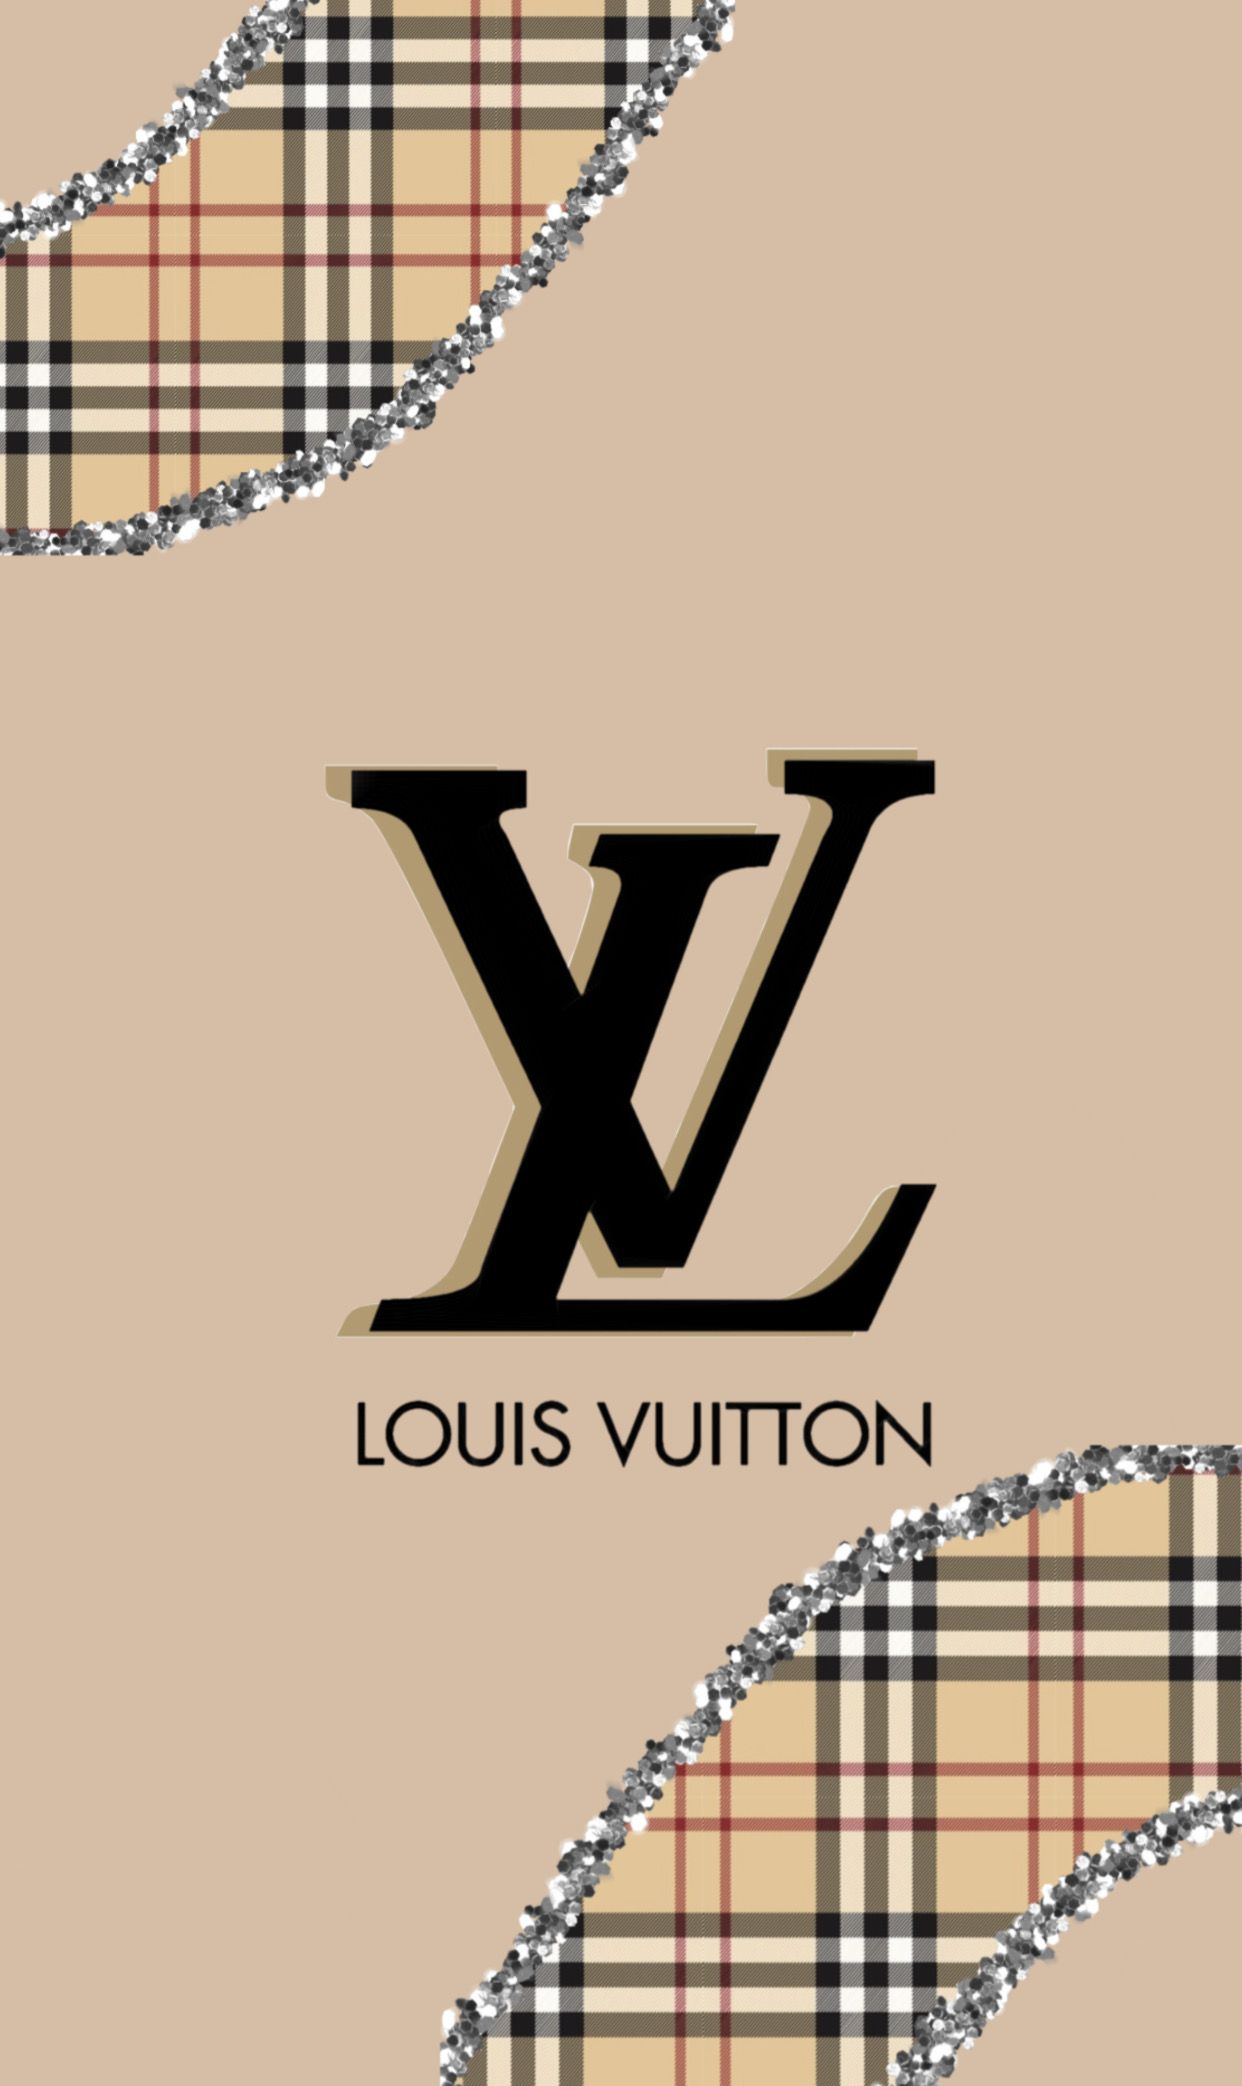 Louis Vuitton Wallpaper - EnWallpaper